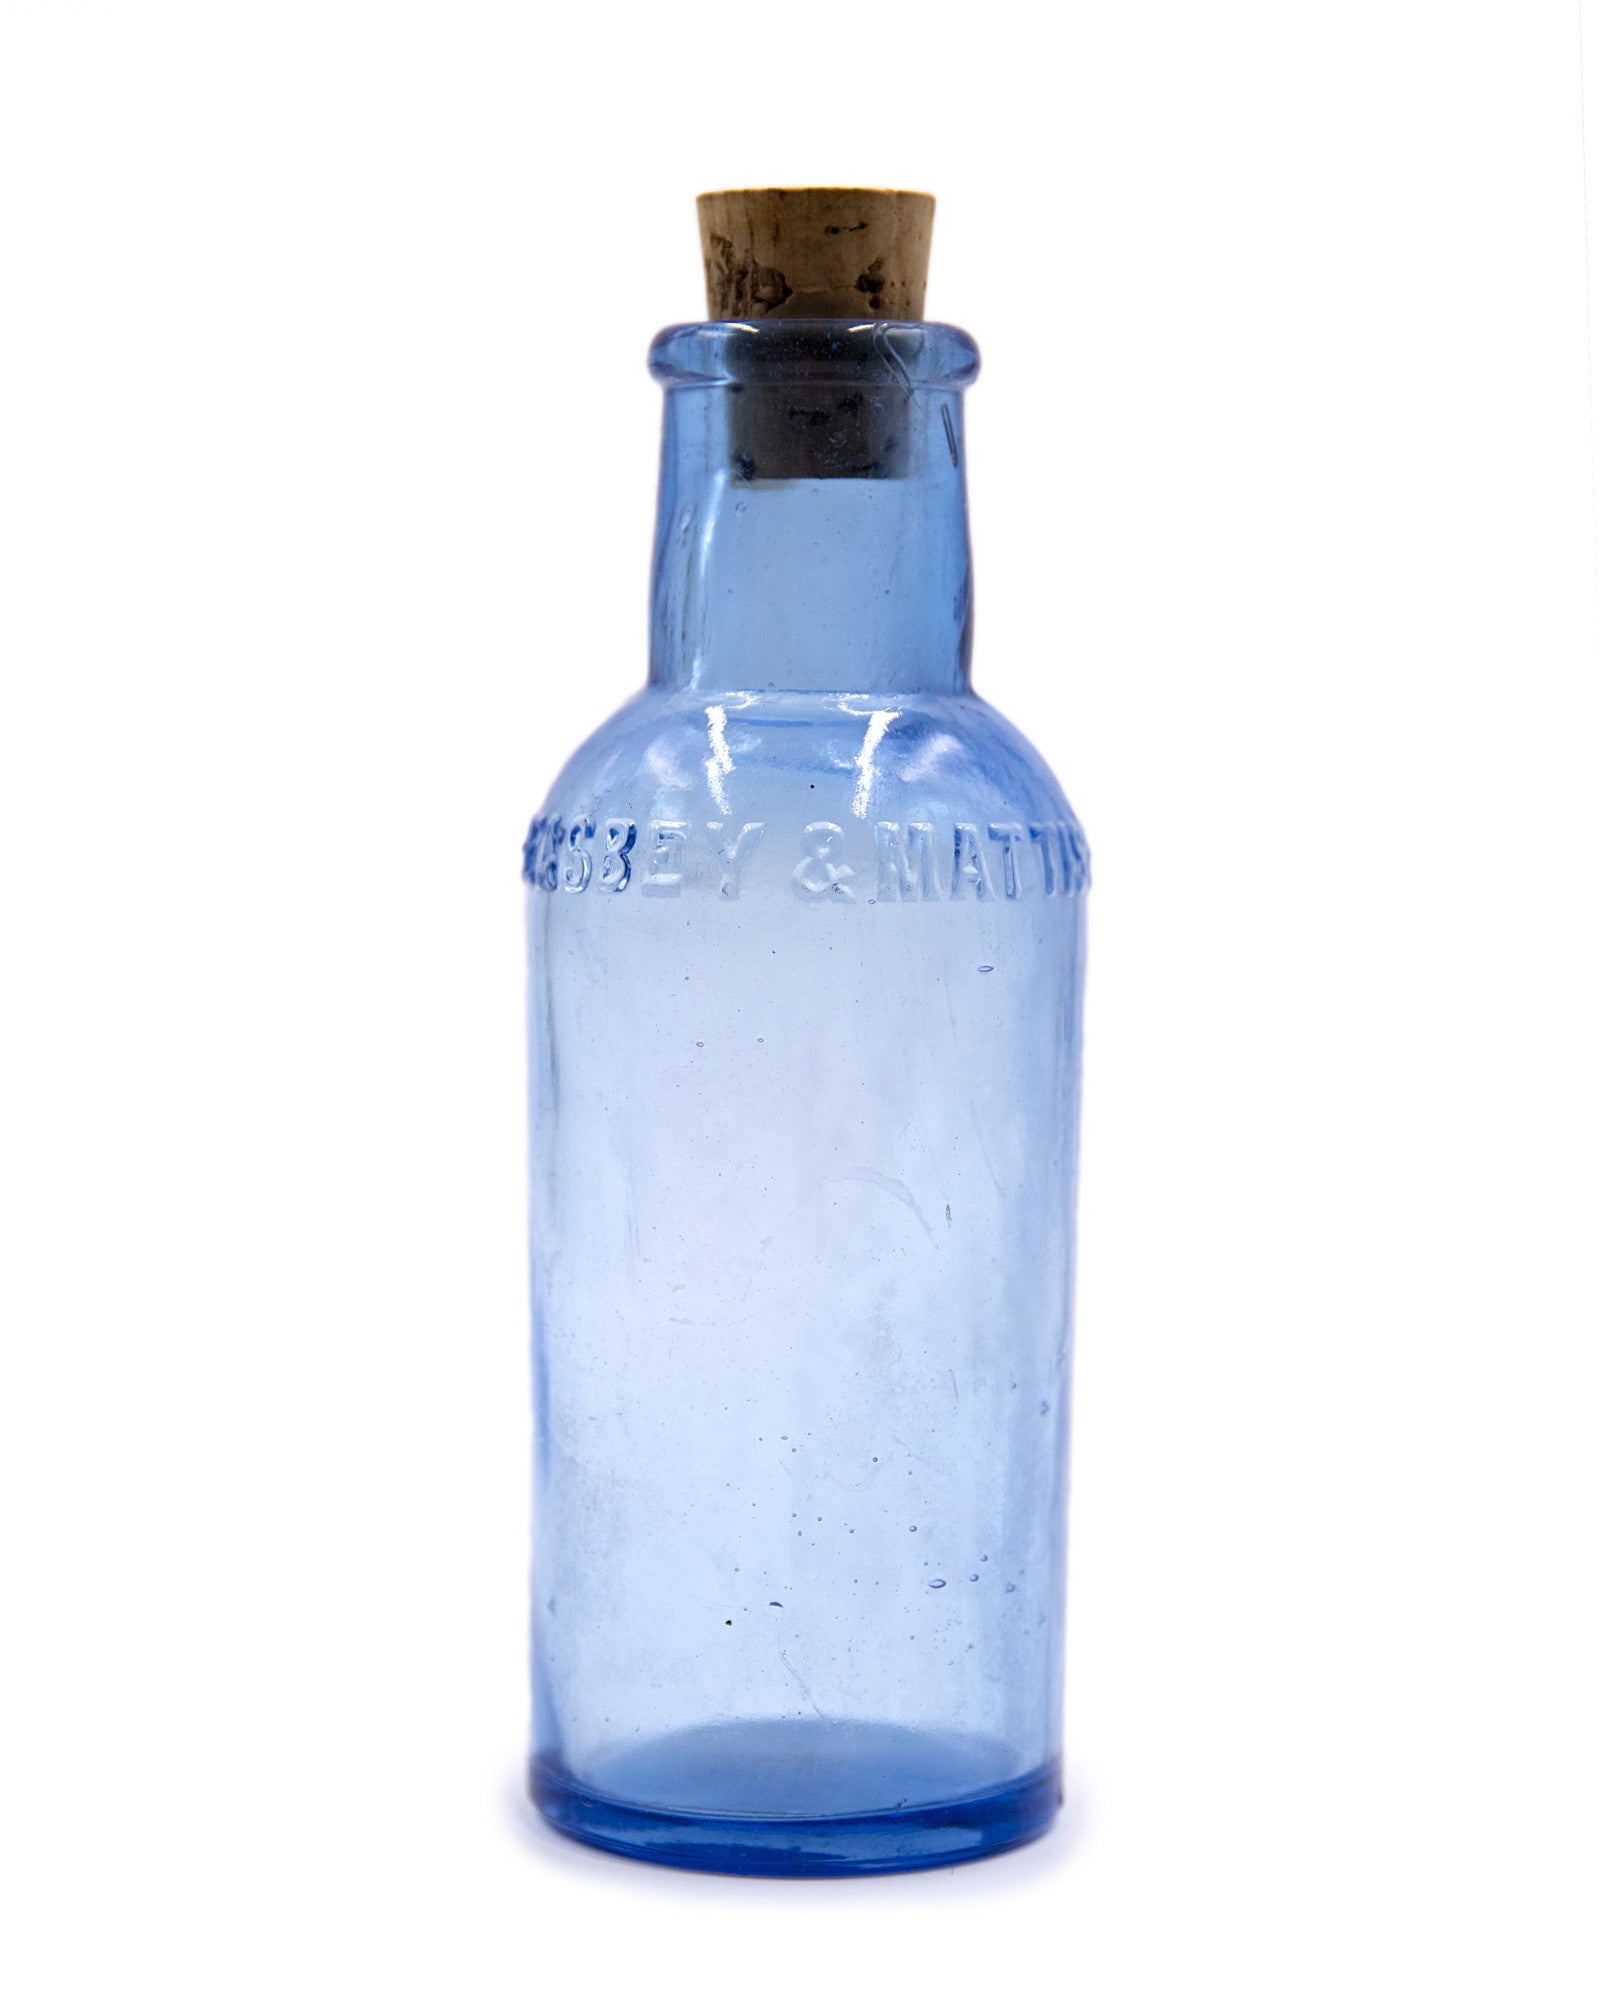 Glass Bottle - Keasbey and Mattison Co., Ambler, PA